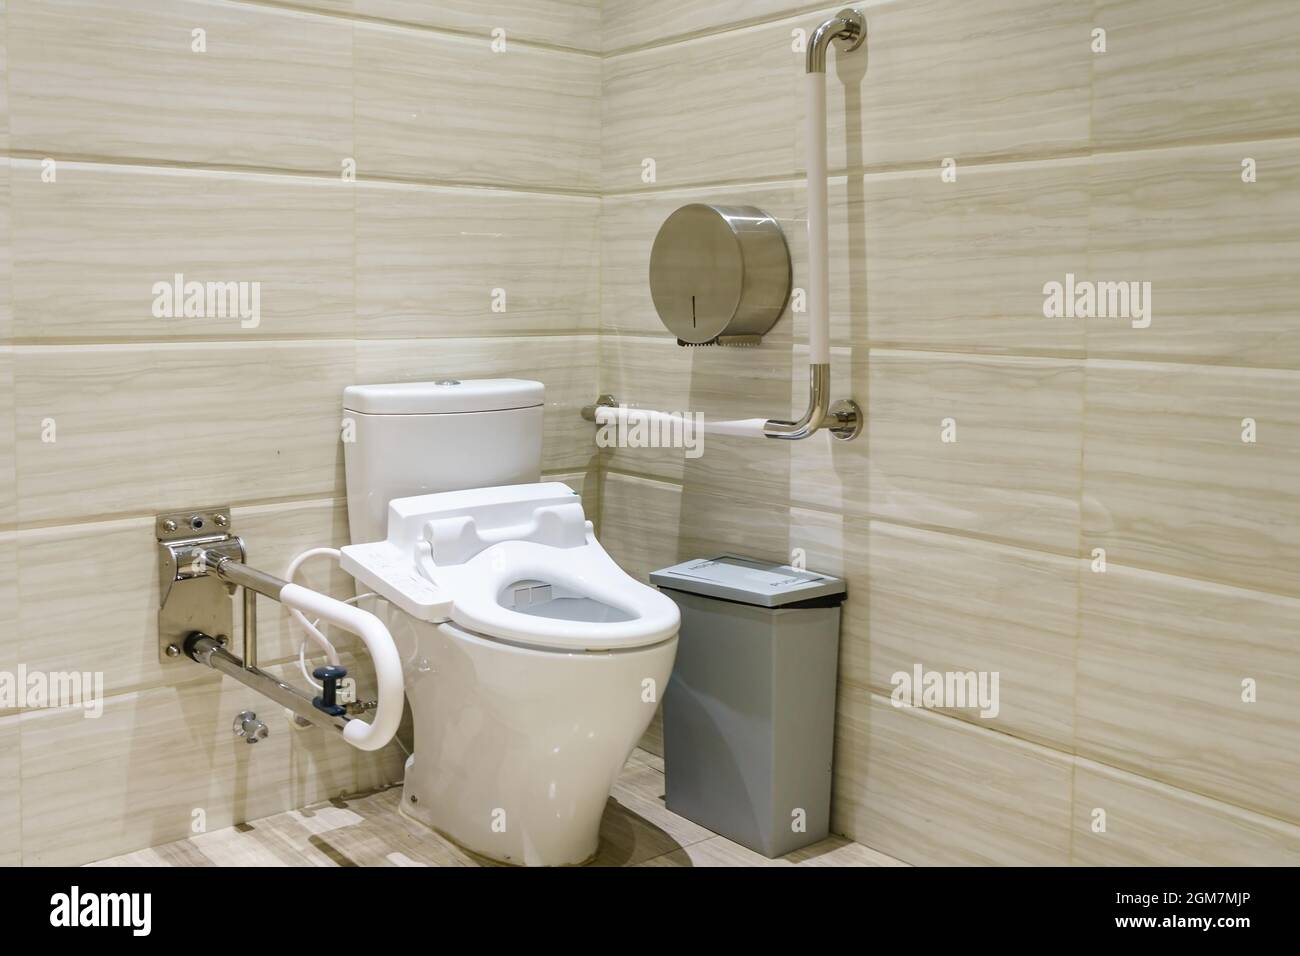 Intérieur de salle de bains pour les personnes handicapées ou âgées. Main courante pour les personnes handicapées et âgées dans la salle de bains Banque D'Images